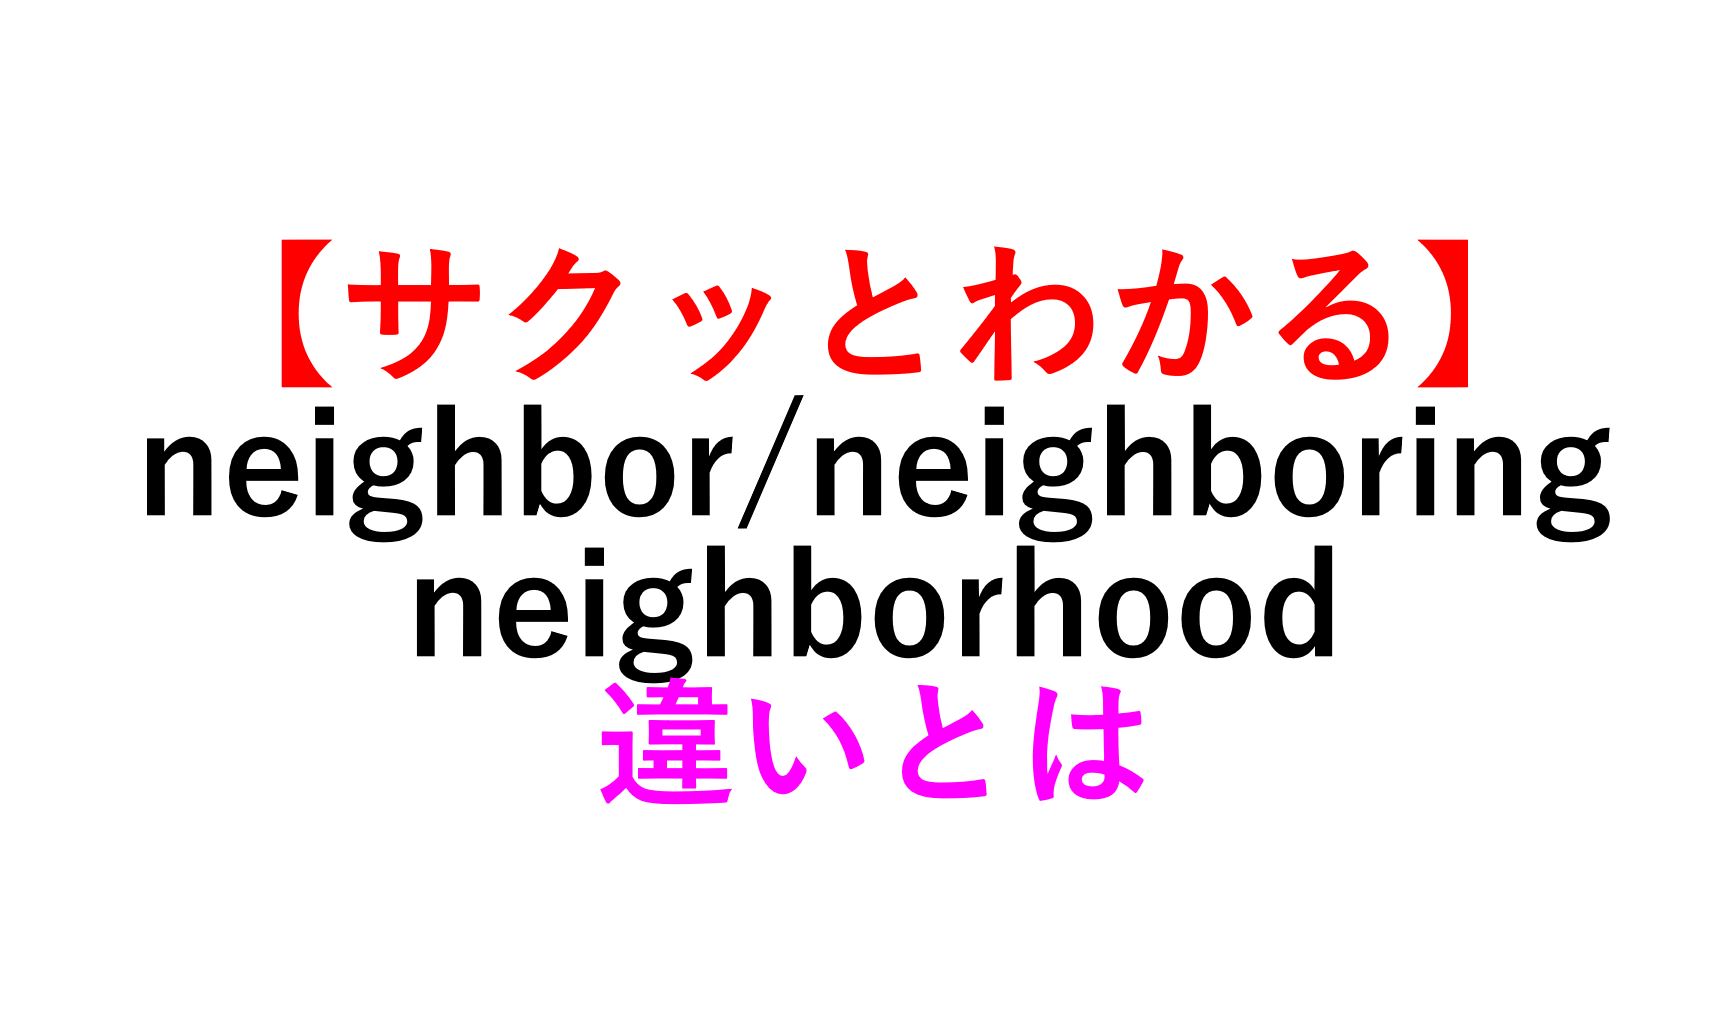 Neighborhoodの言い換えは？